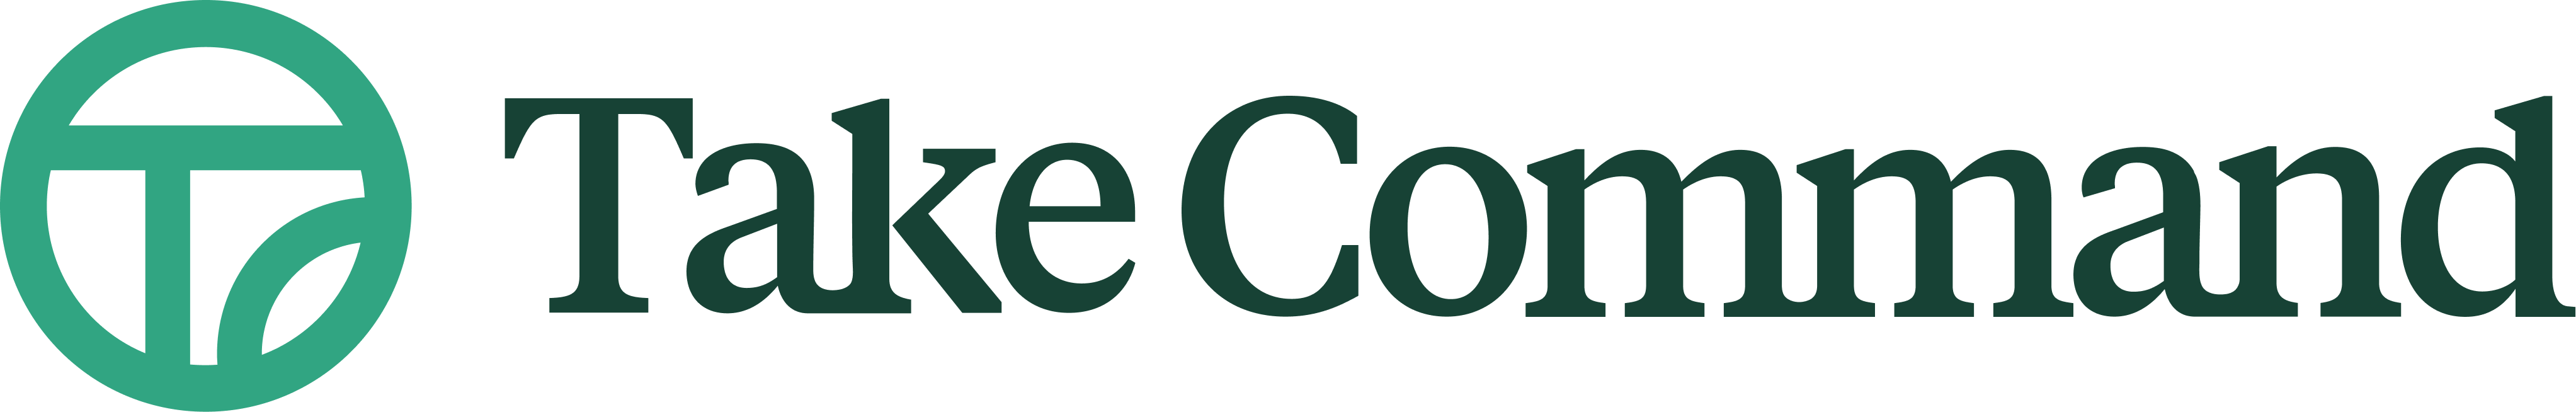 tc-logo-secondary-color